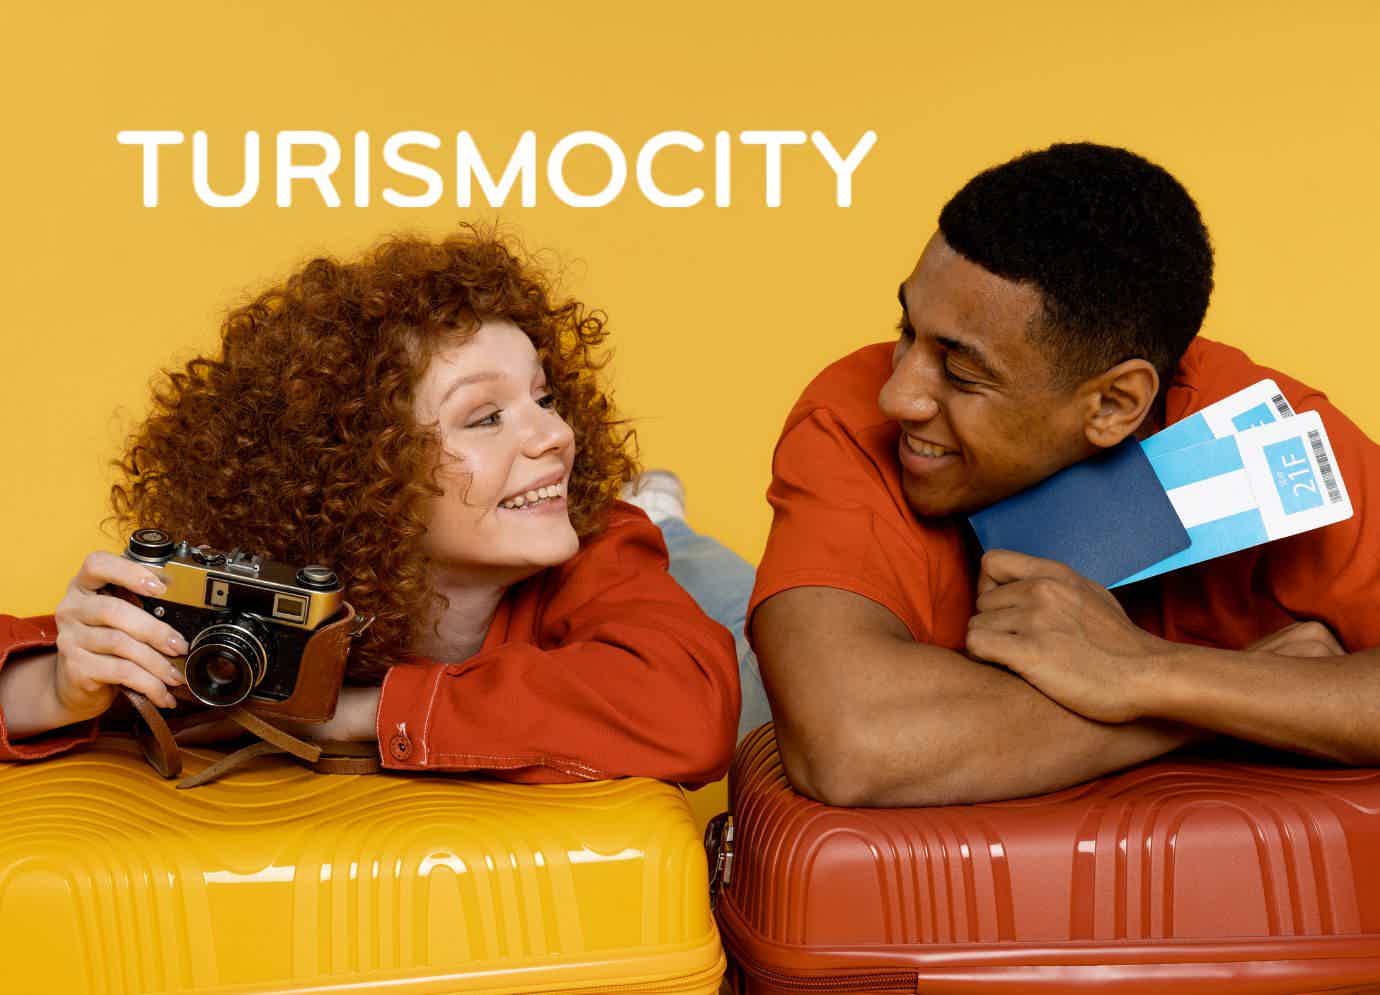 Veja tudo que precisa sobre o app Turismocity. Fonte: Freepik/Turismocity